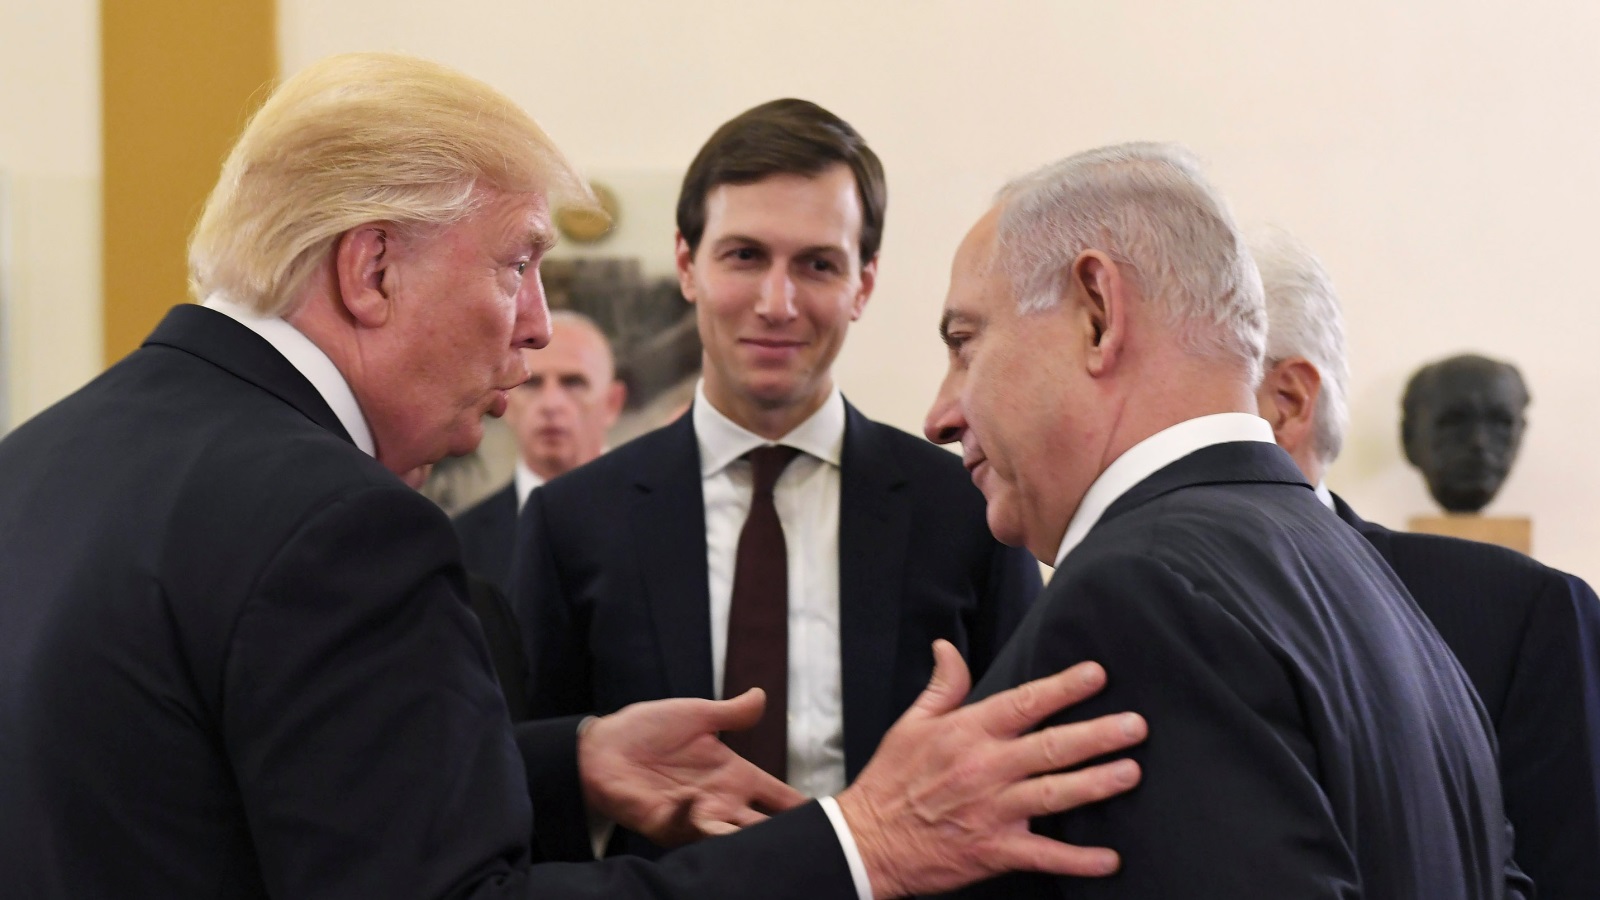 كوشنير حصل على تطمينات عربية حول اتجاه الموقف الفلسطيني المعلن حول المقاطعة السياسية للولايات المتحدة نحو التغيير